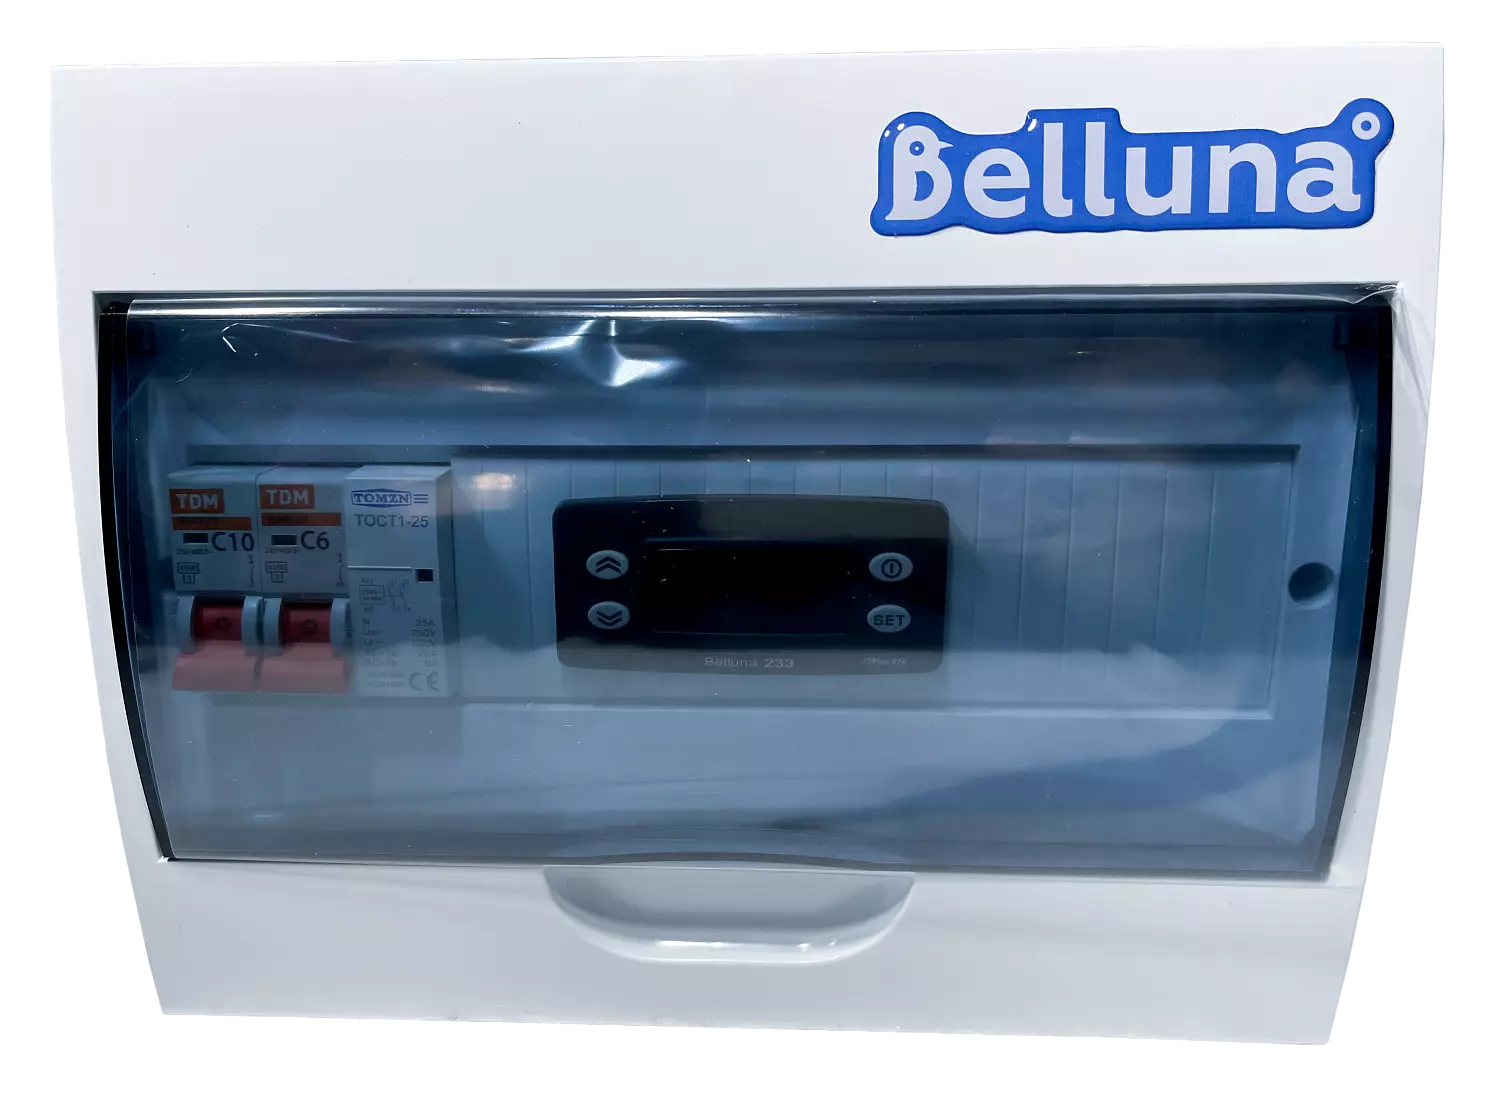 сплит-система Belluna U102-1 Челябинск